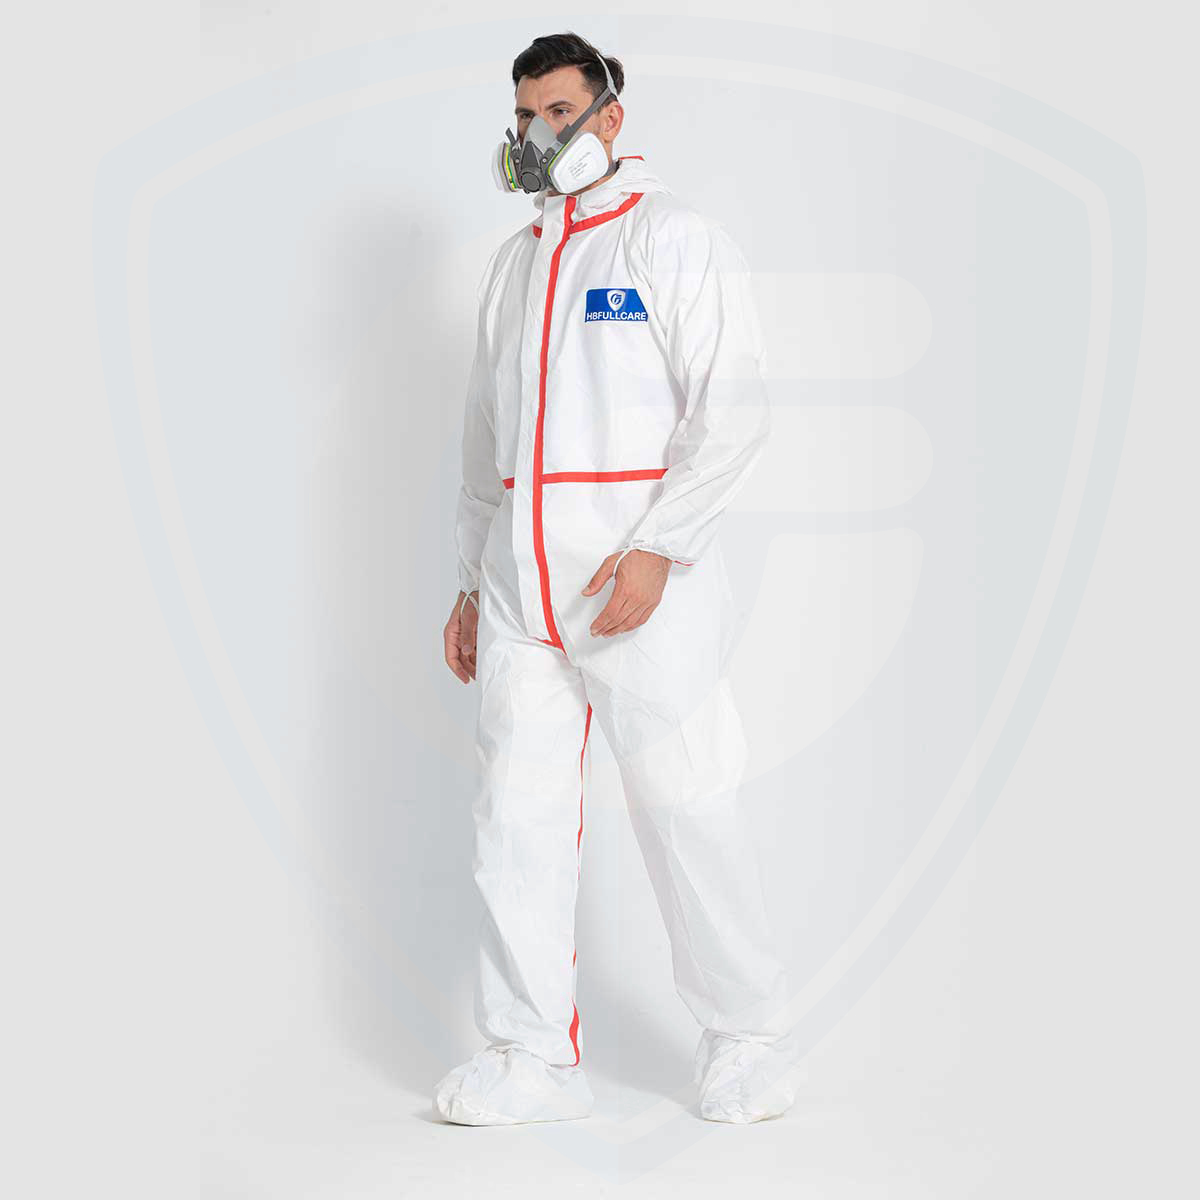 Vêtements de protection jetables microporeux Type5/6 de sécurité résistante aux produits chimiques imperméables